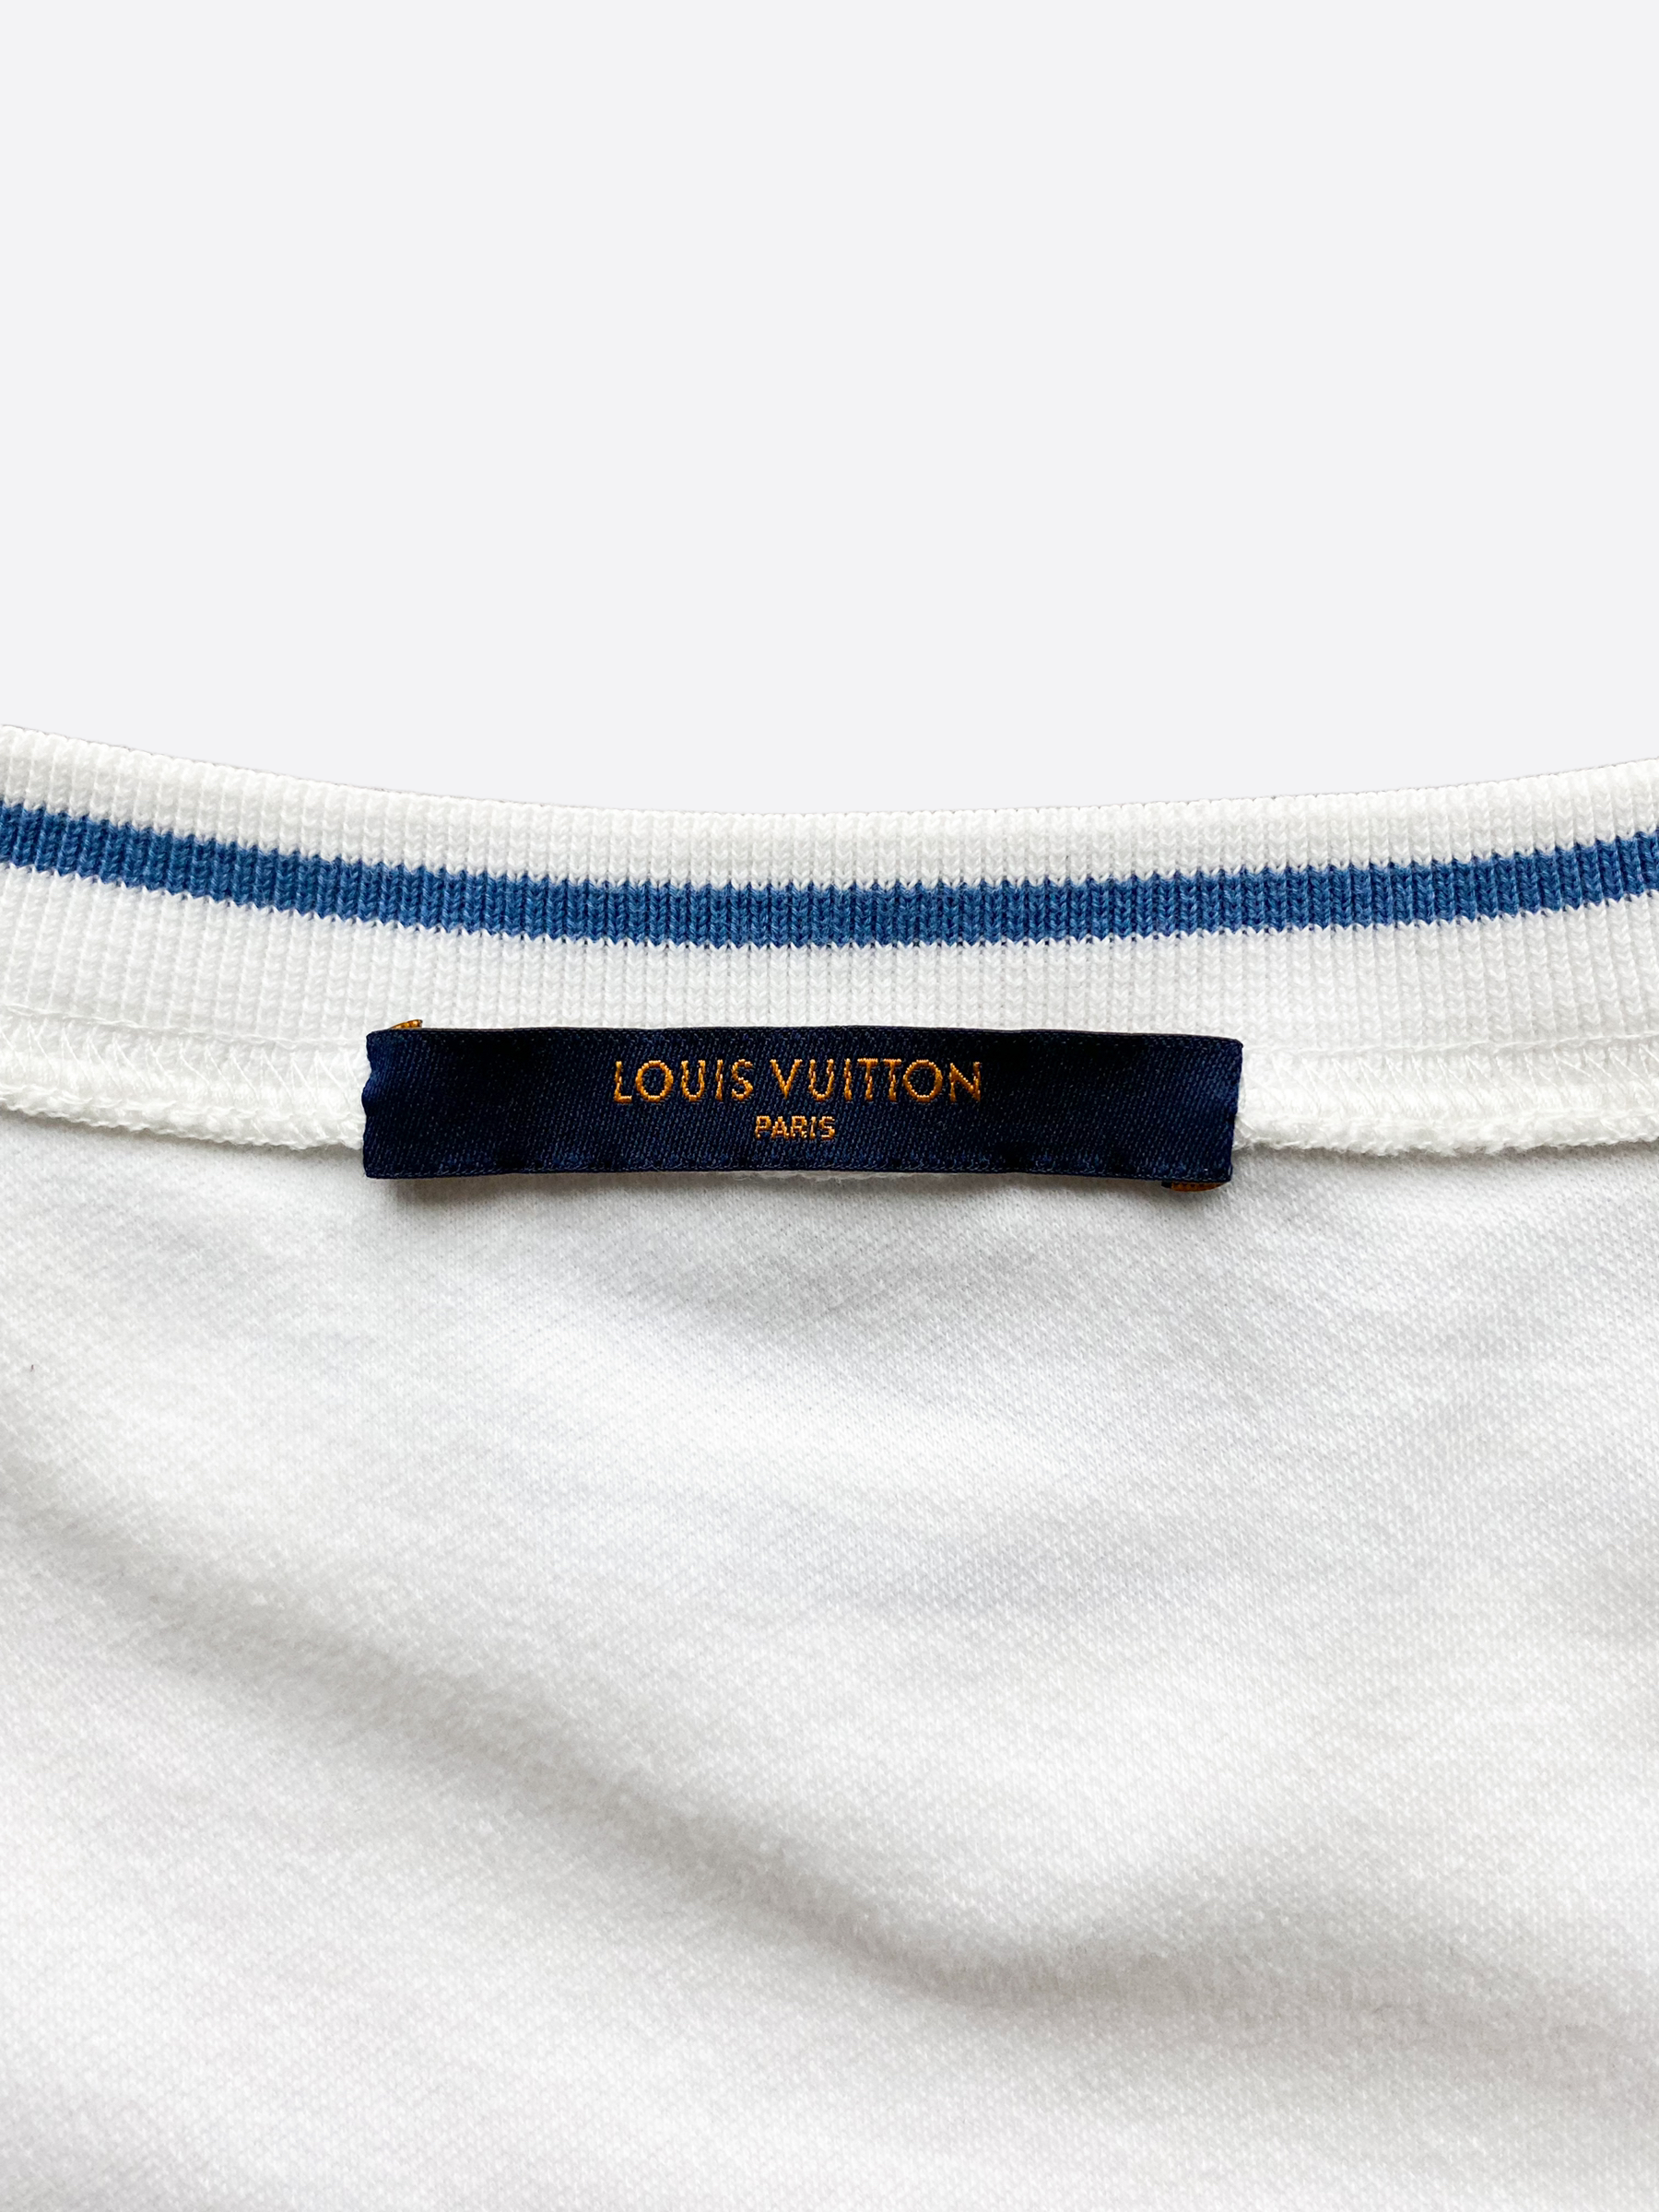 Louis Vuitton Monogram Accessory Pouch T Shirt